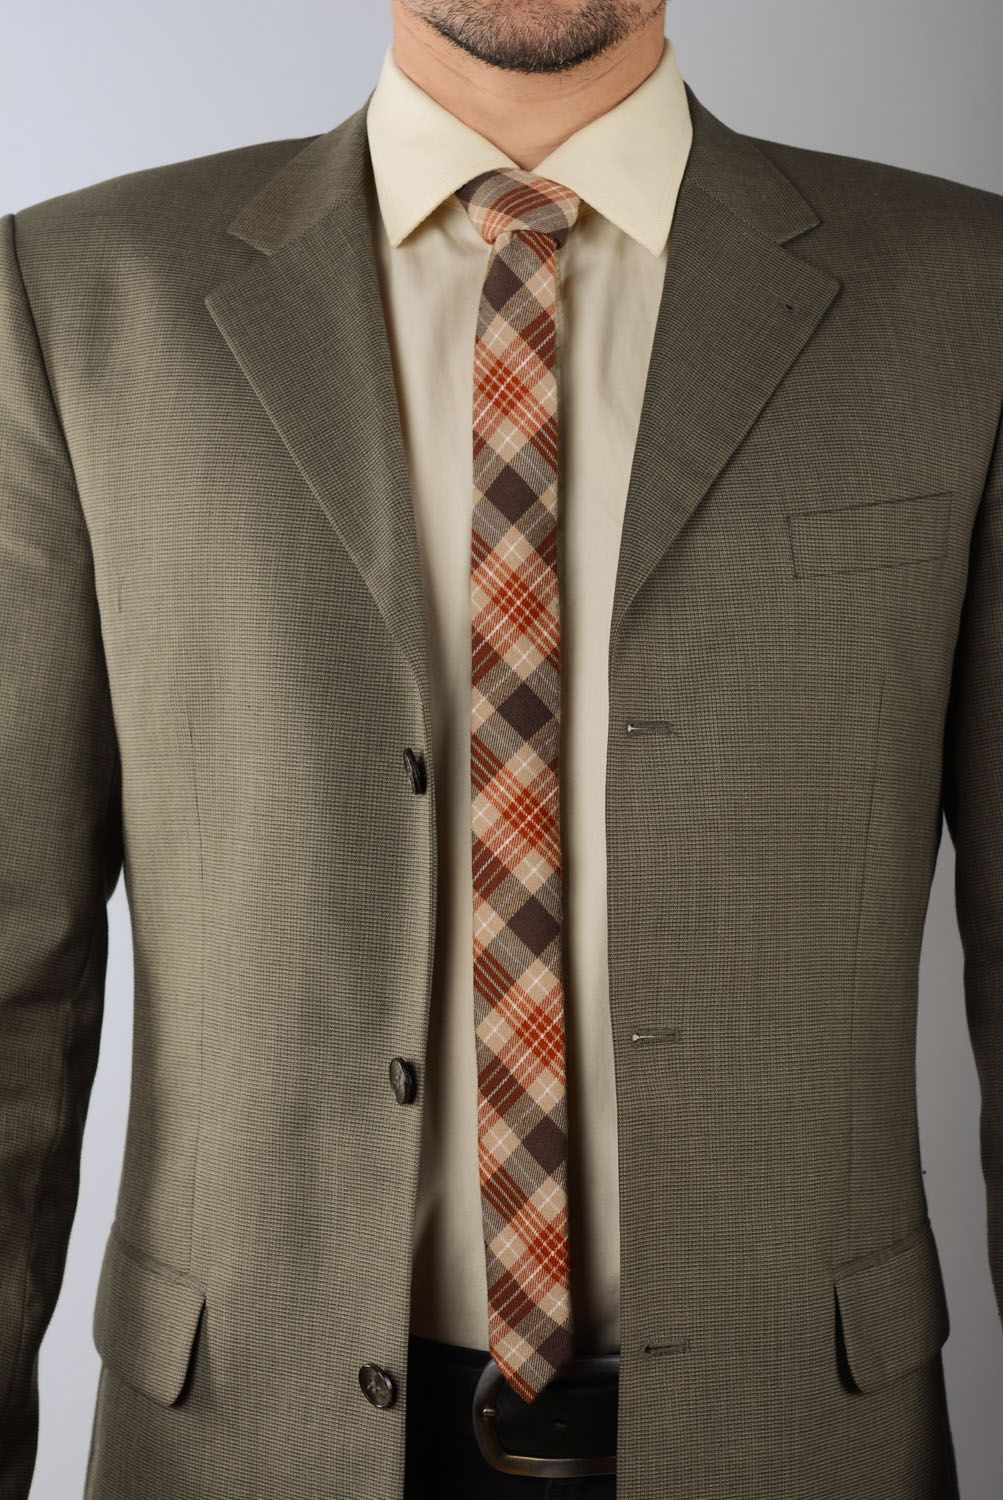 Cravate à carreaux terre cuite en tweed photo 1